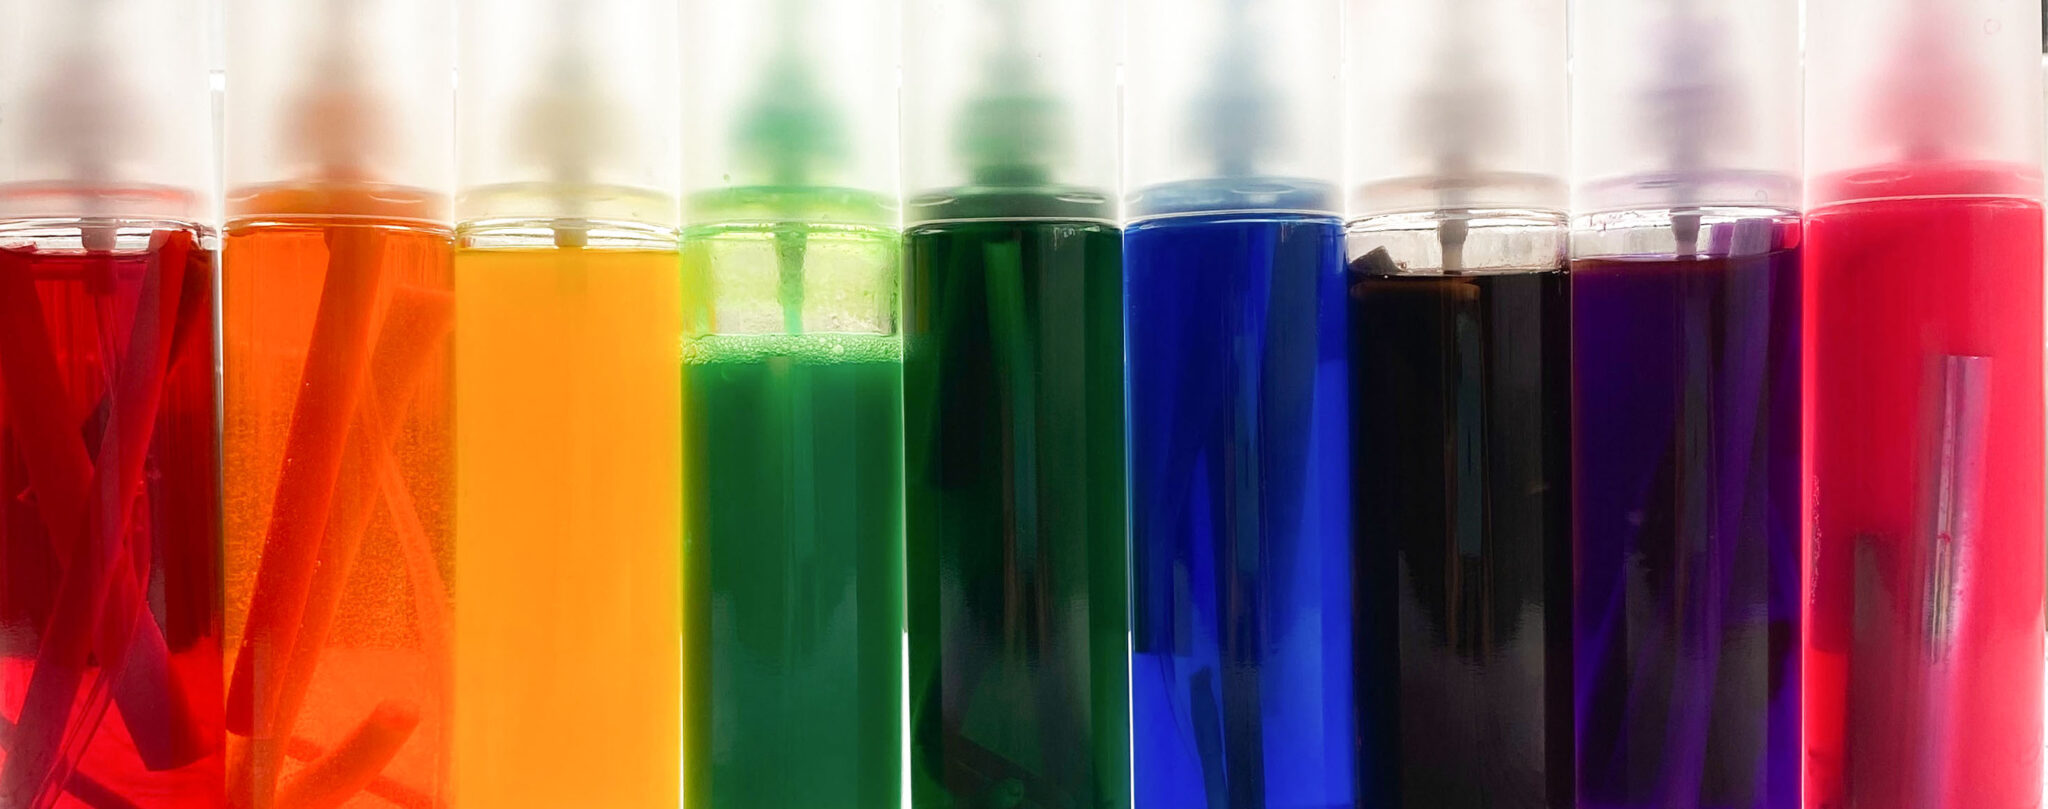 Glas-Sprühflaschen in einer Reihe stehend, mit flüssiger Farbe darin. Diese Farbe stammt aus leeren oder eingetrockneten Filzstiften.